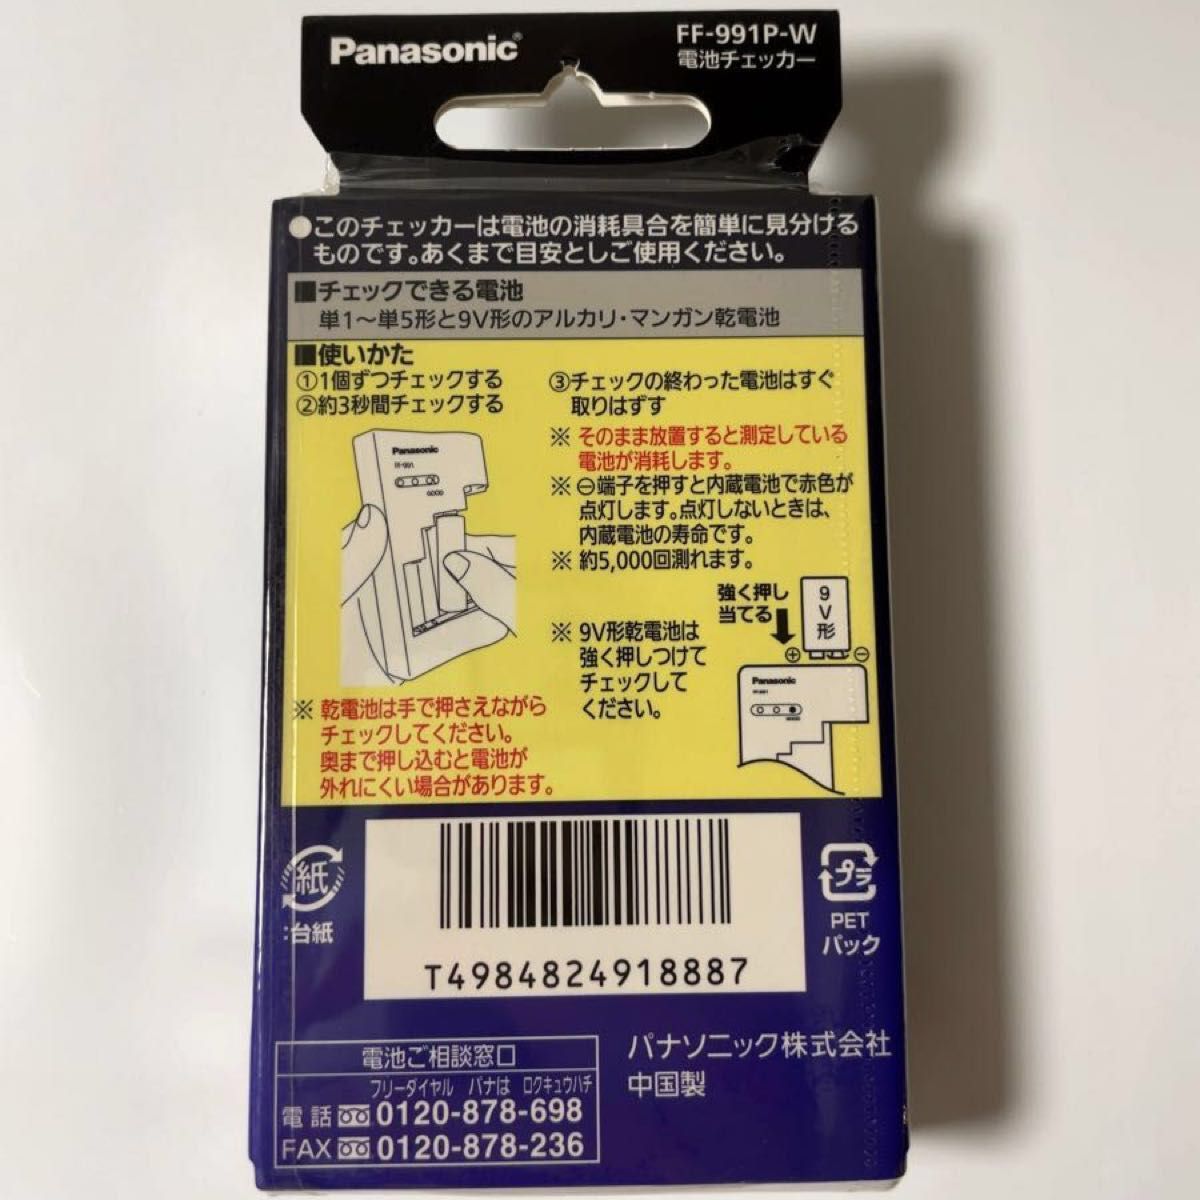 パナソニック 電池チェッカー バッテリーチェッカー テスター FF-991P-W 税込定価1,452円 新品未開封です！